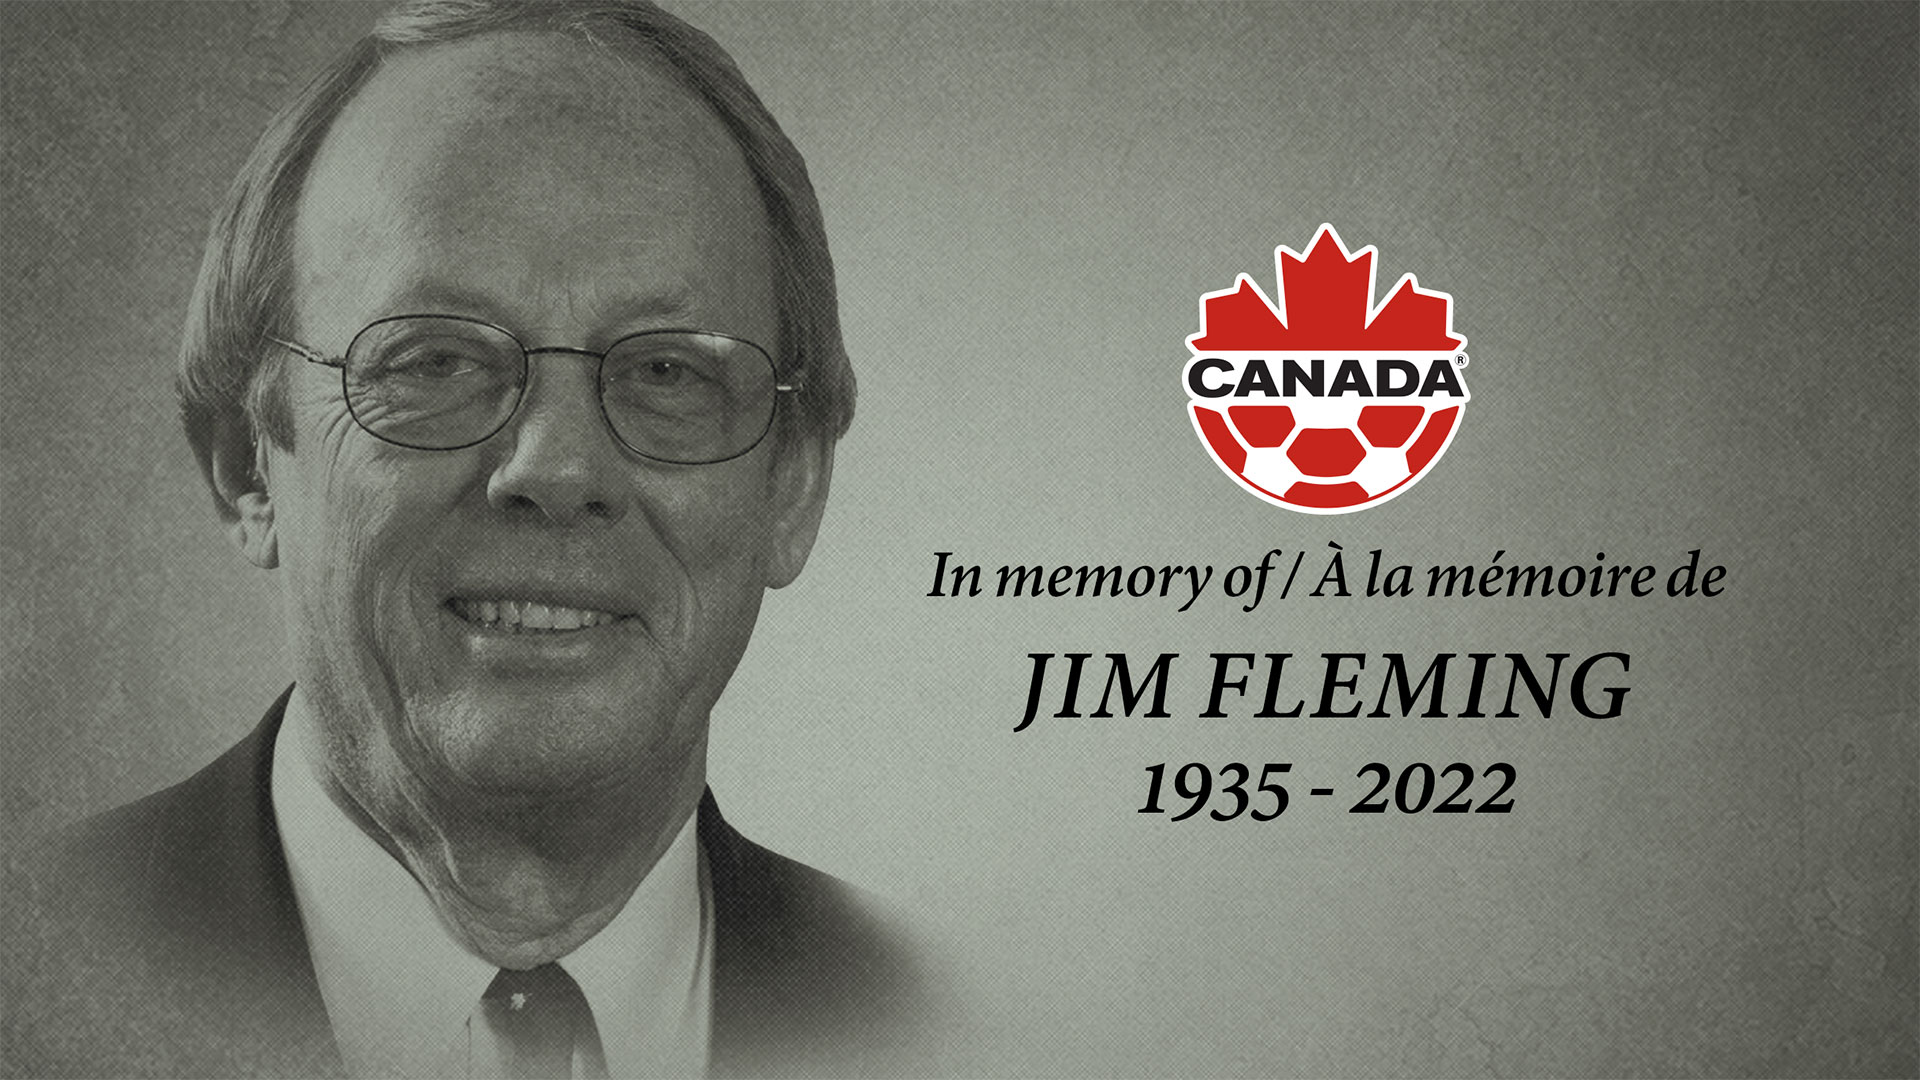 Jim Fleming